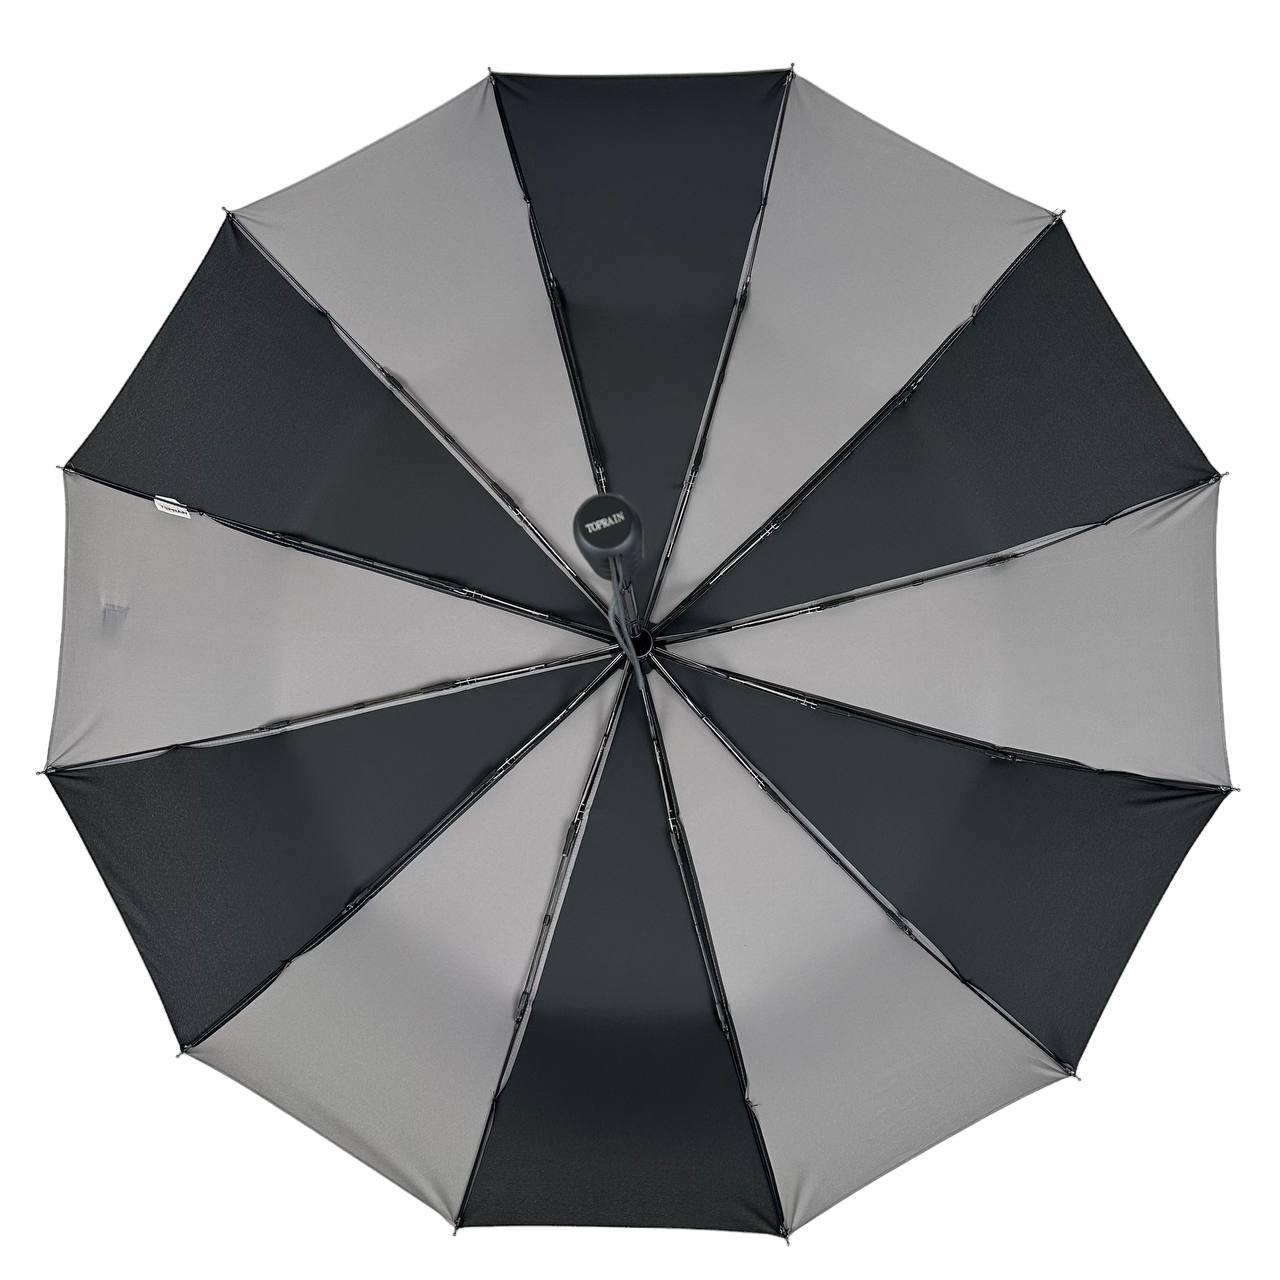 Складана парасолька повний автомат Toprain 105 см сіра - фото 7